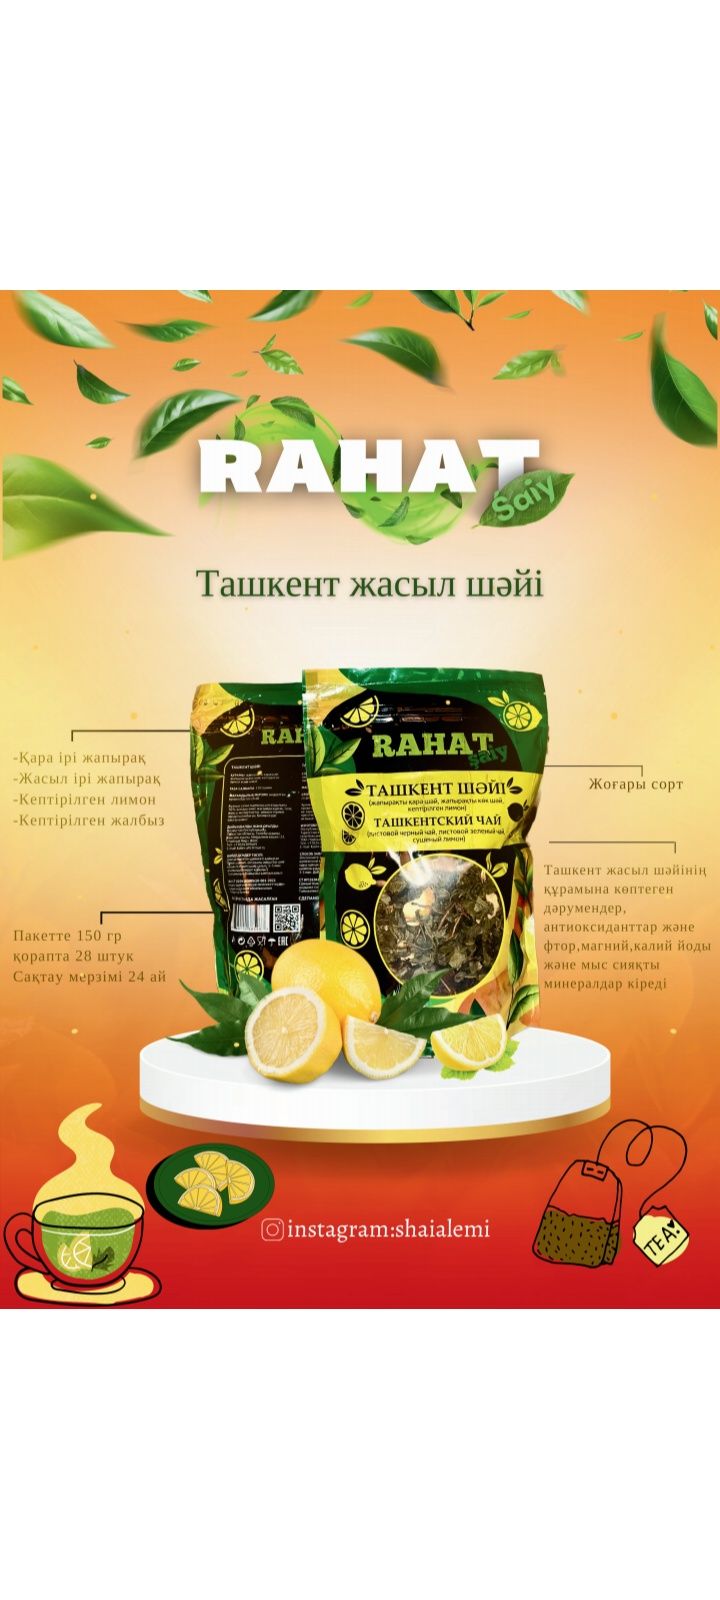 Чай ташкентский оптом есть несколько видов